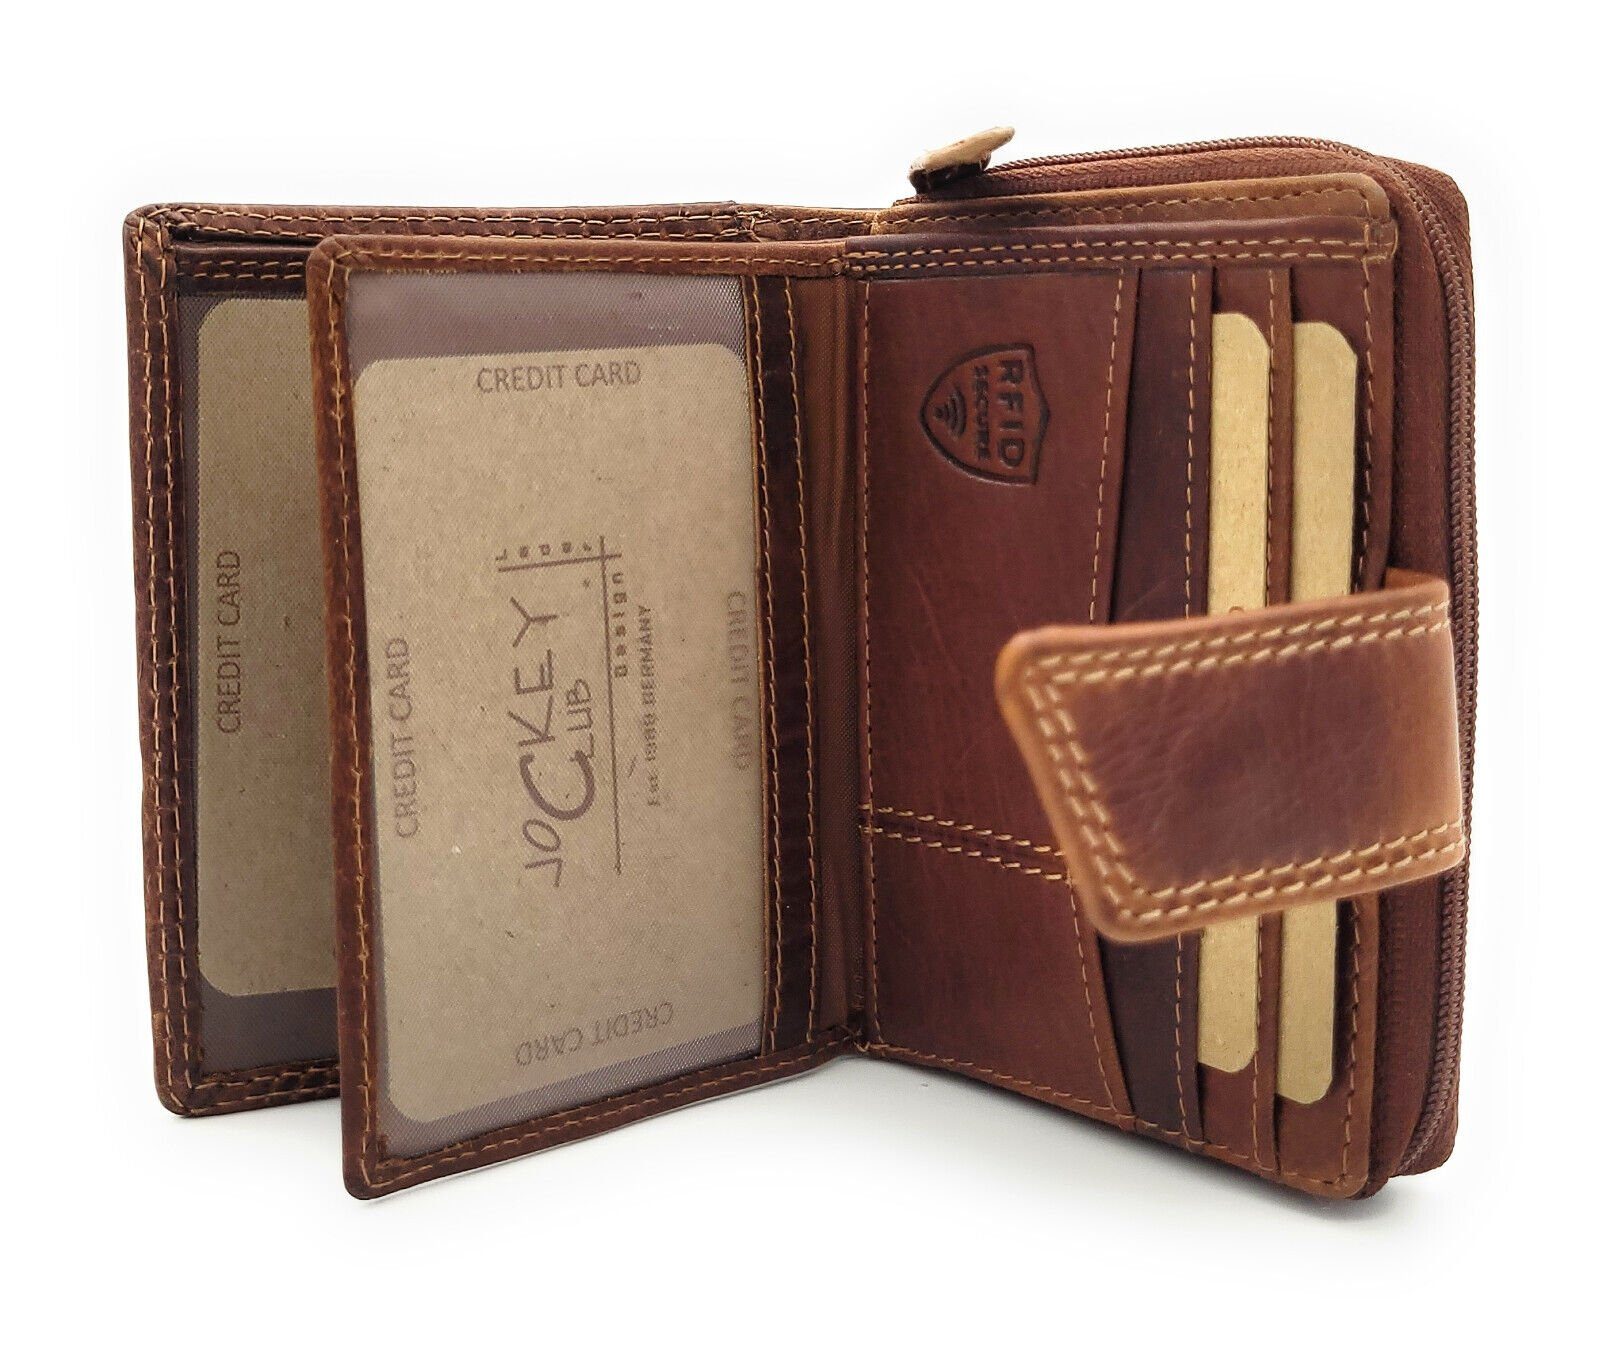 JOCKEY Sauvage CLUB Rindleder, mit braun RFID kompakt & Schutz, handlich, Portemonnaie Leder Mini Geldbörse echt cognac Damen